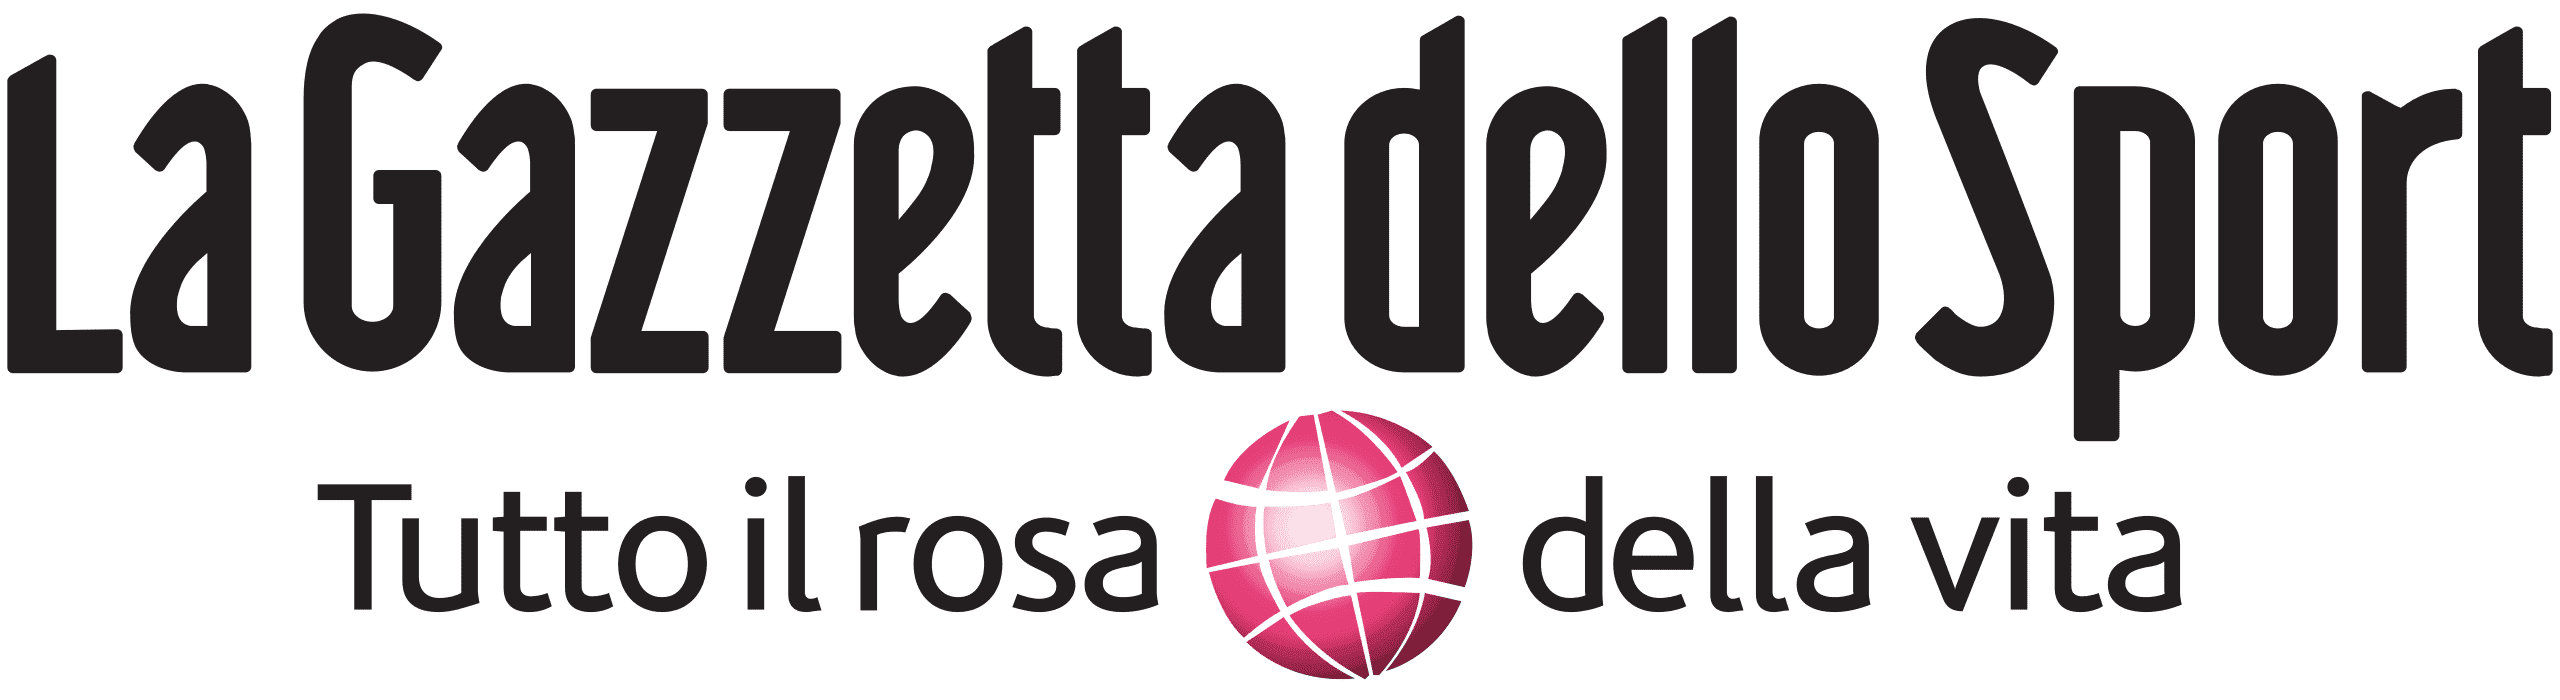 La_Gazzetta_dello_Sport_logo